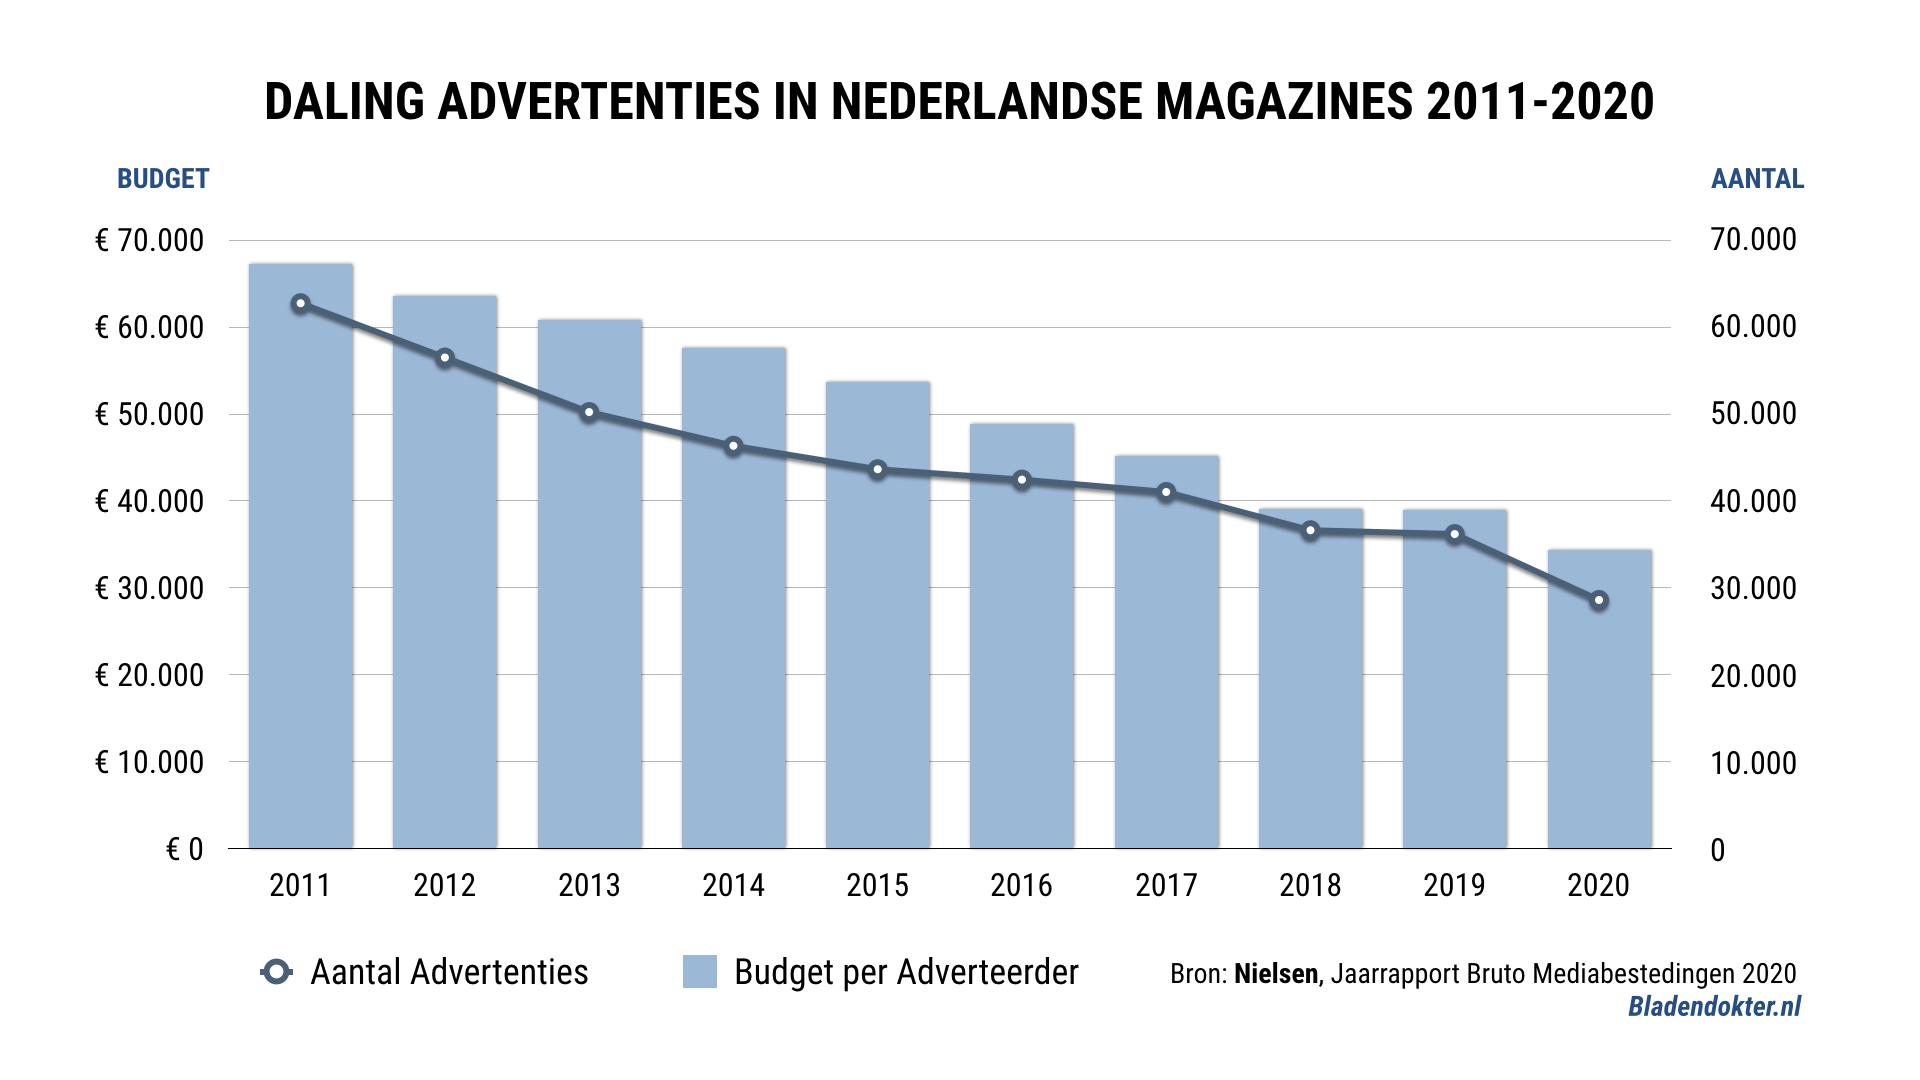 Aantal advertenties en gemiddeld budget per adverteerder daalt sterk tussen 2011 en 2020